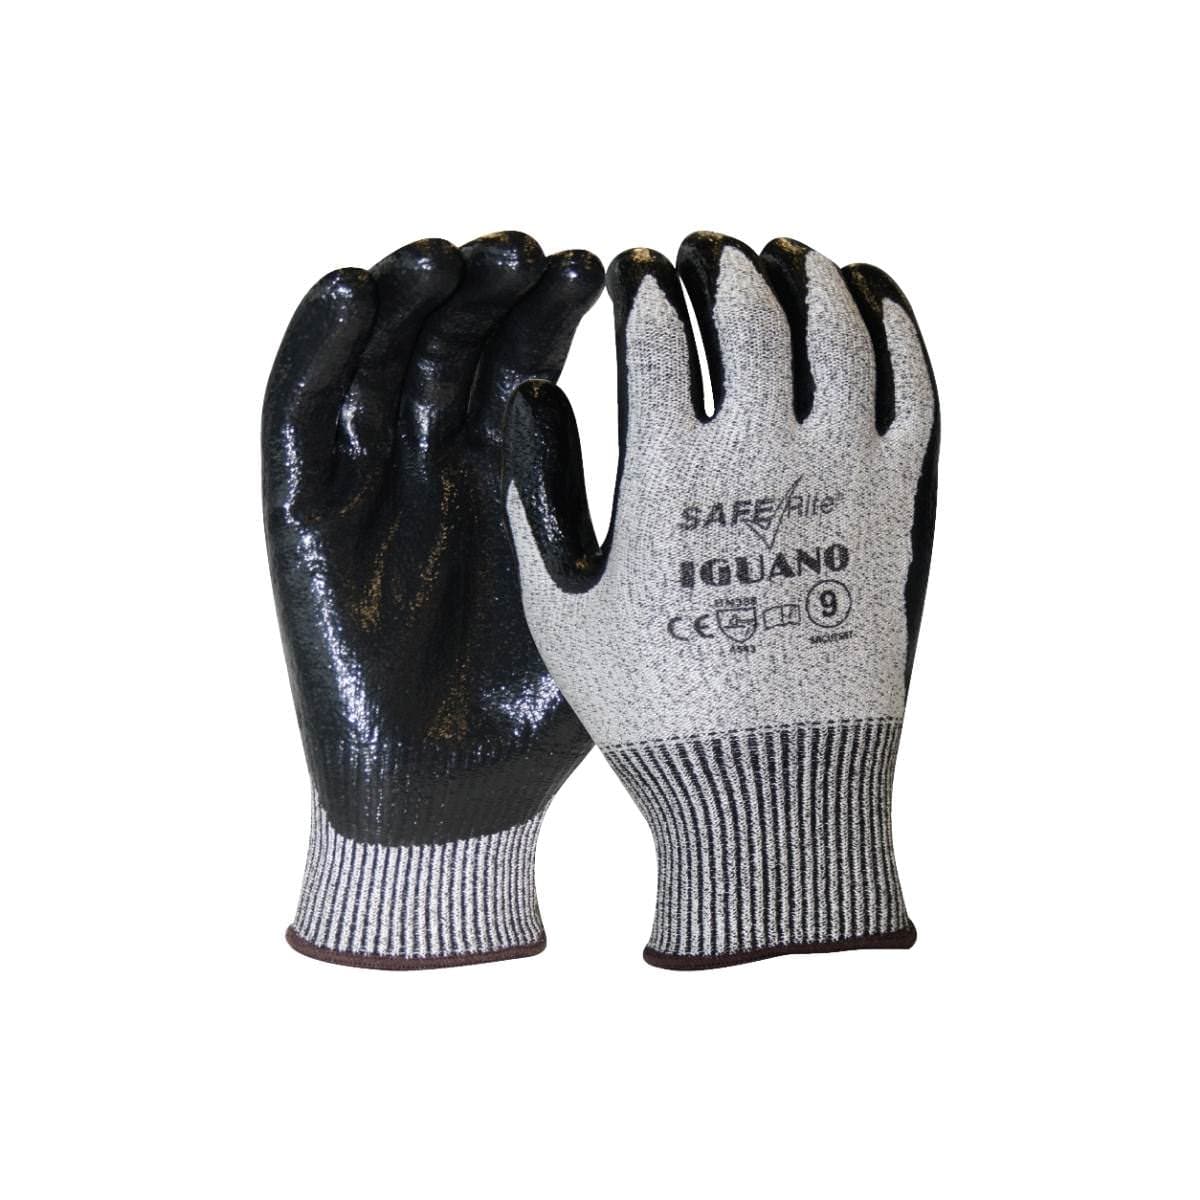 SafeRite® Iguano Cut 5 Nitrile Glove SRCUT5NT(Pack of 12)